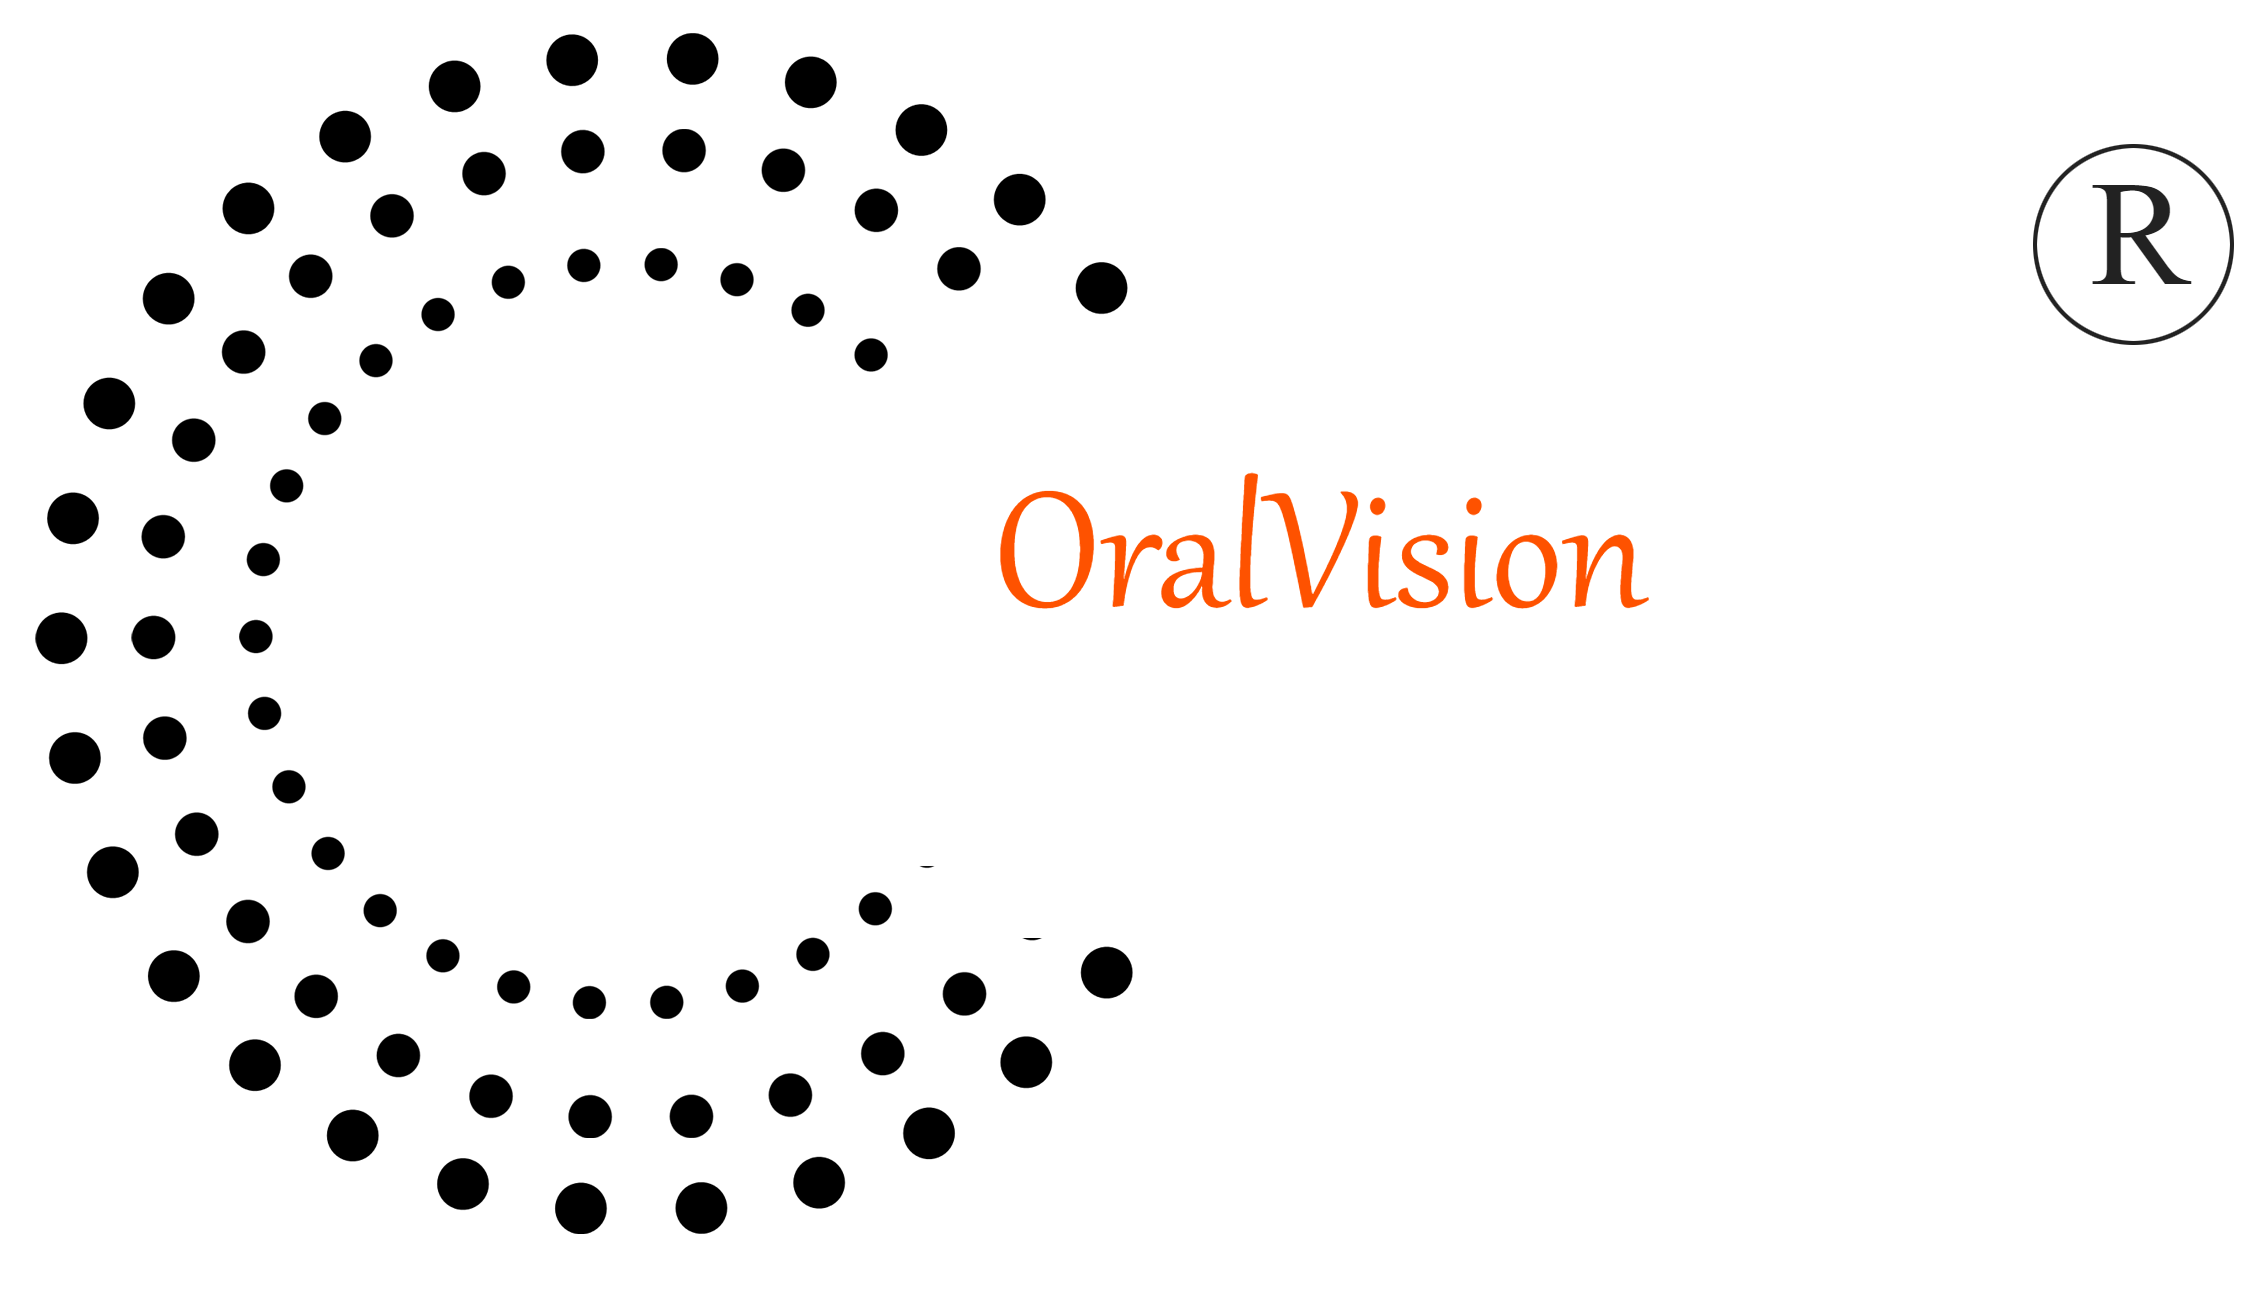 OralVision